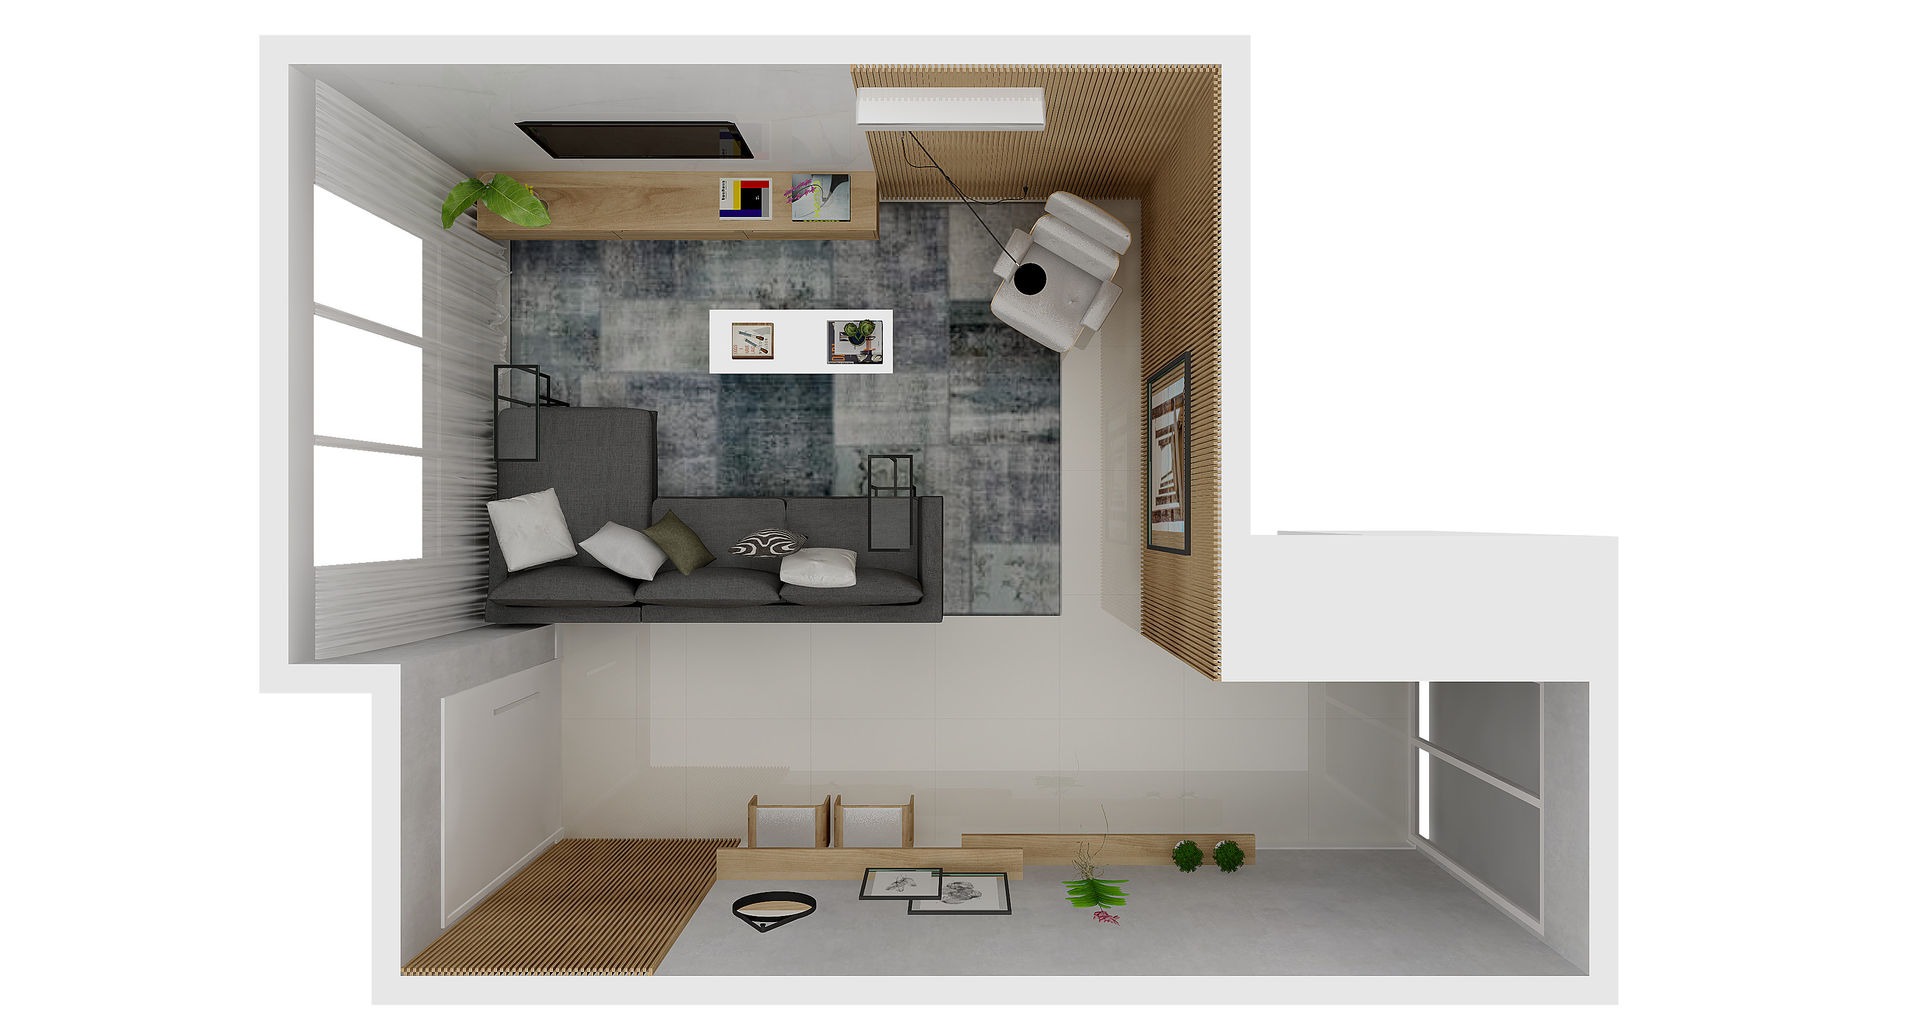 Sala para Relaxar e Receber, ArquitetureSe - Projetos de Arquitetura e Interiores à distância ArquitetureSe - Projetos de Arquitetura e Interiores à distância Modern living room Wood Wood effect